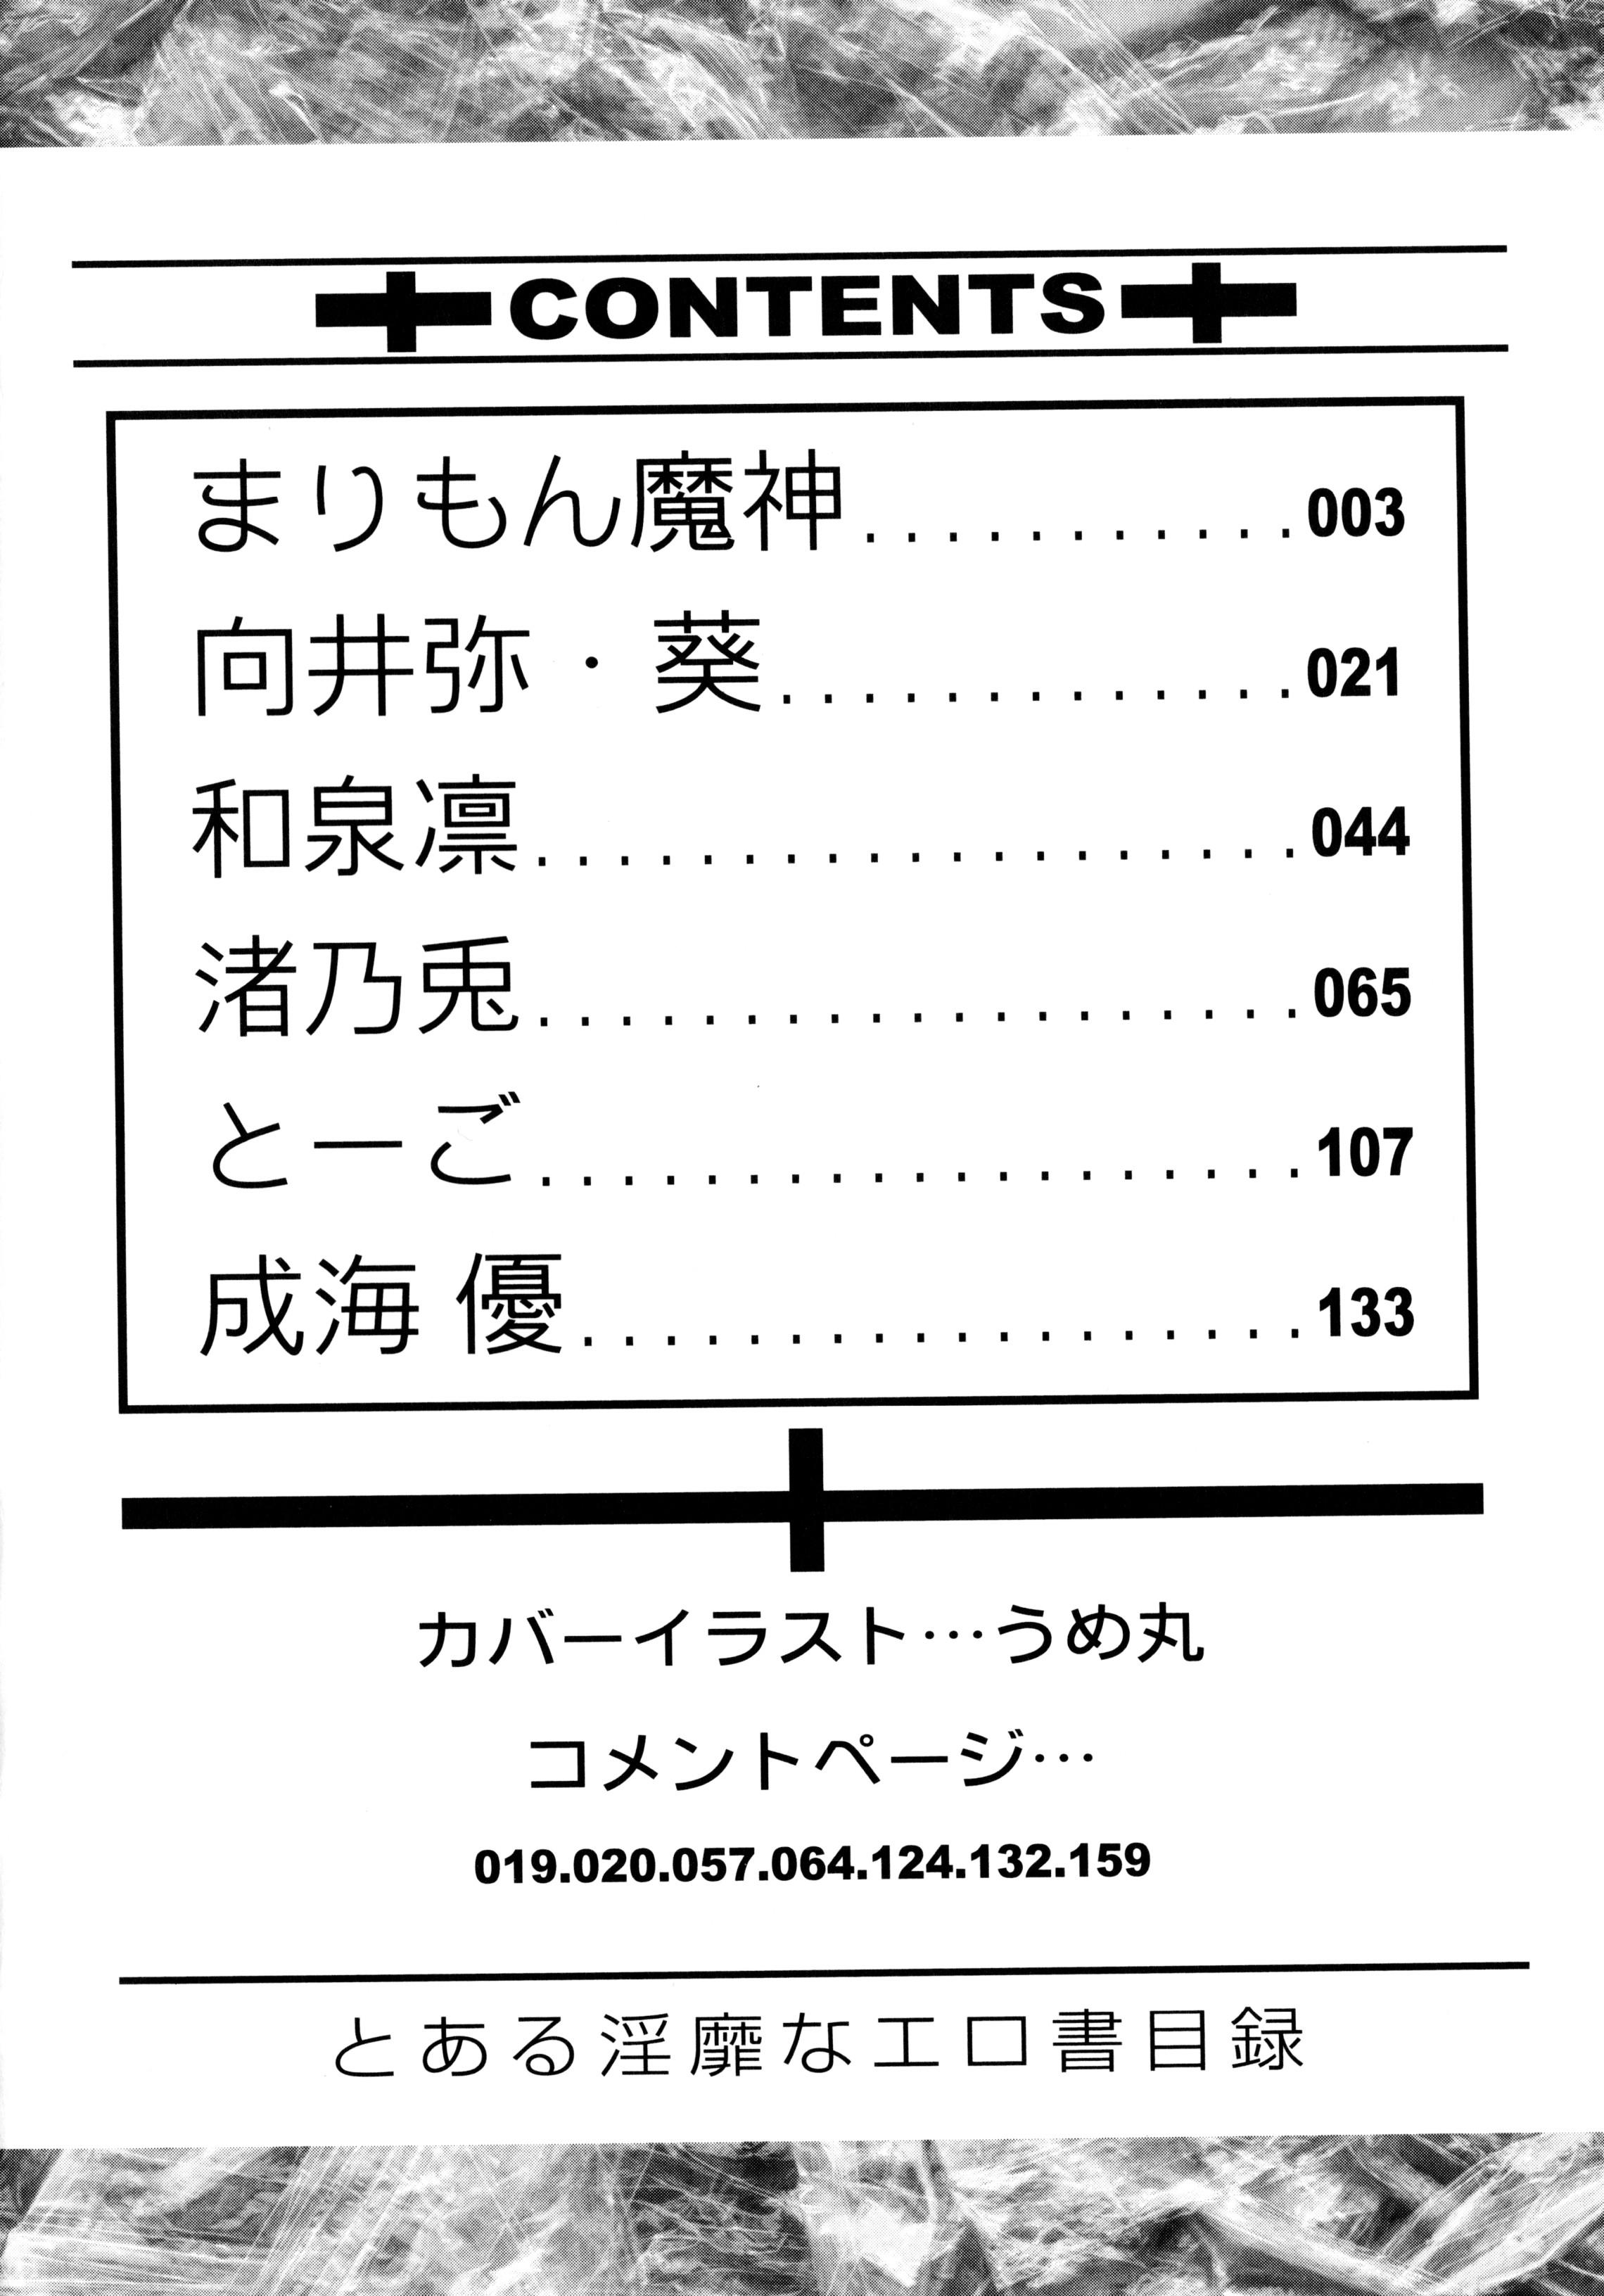 Creampies Toaru Inbi na Erosho Mokuroku - Toaru kagaku no railgun Toaru majutsu no index Lover - Page 4